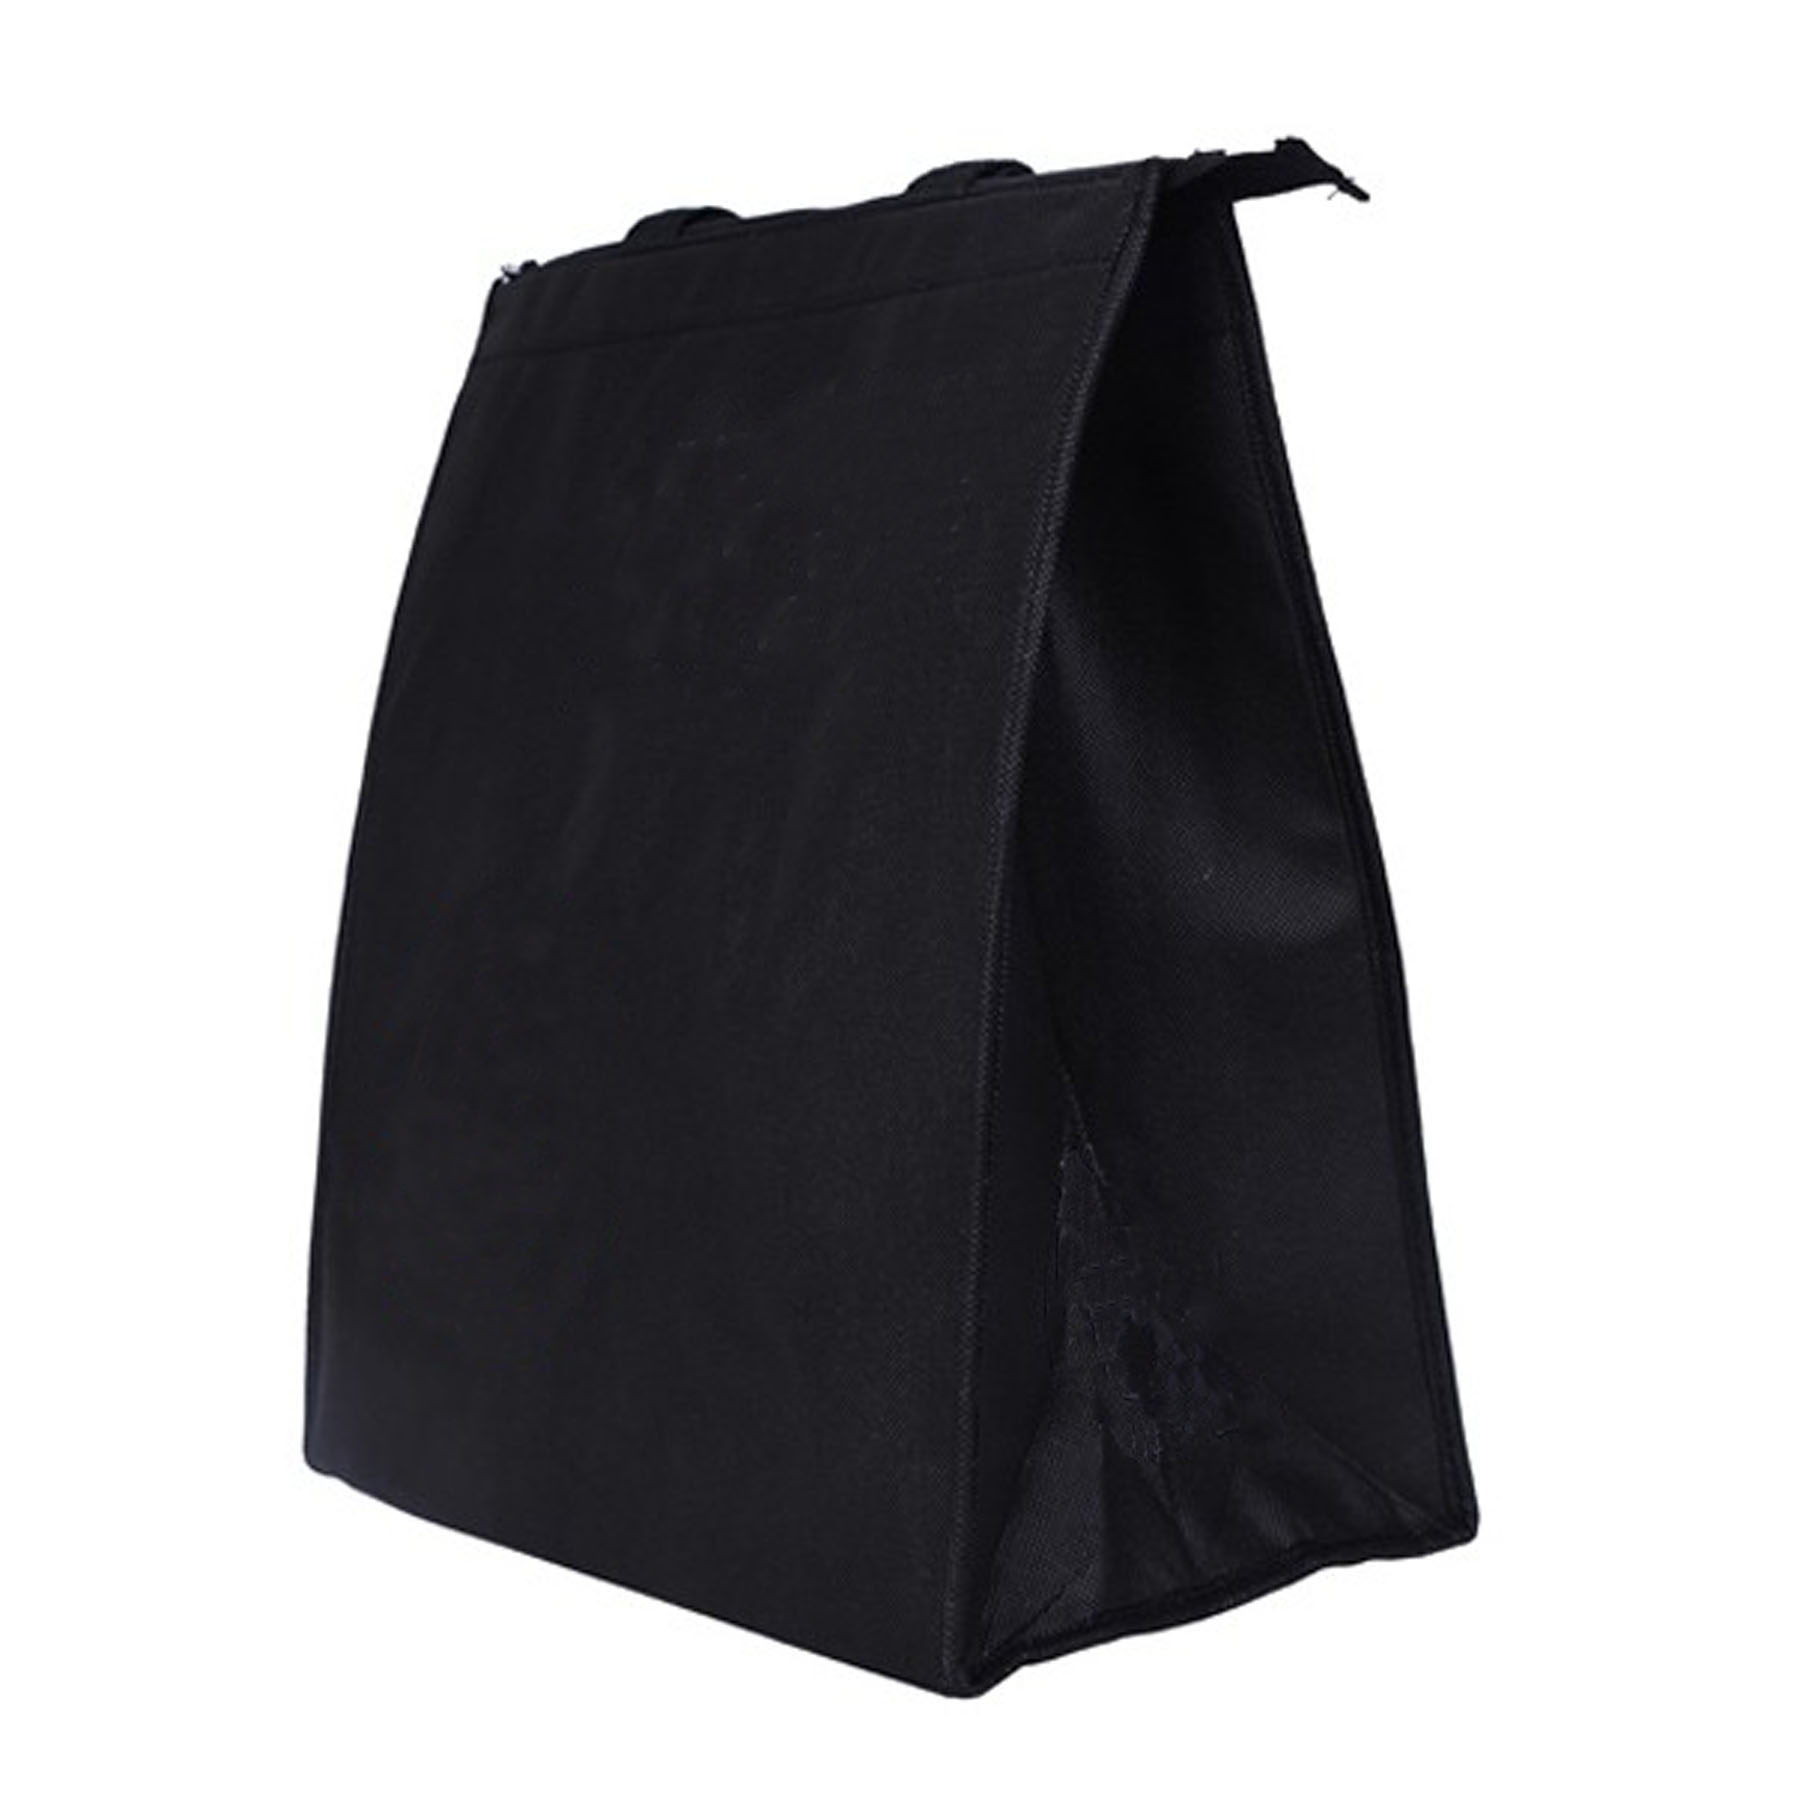 GL-AAT1054 Non-woven Cooler Bag